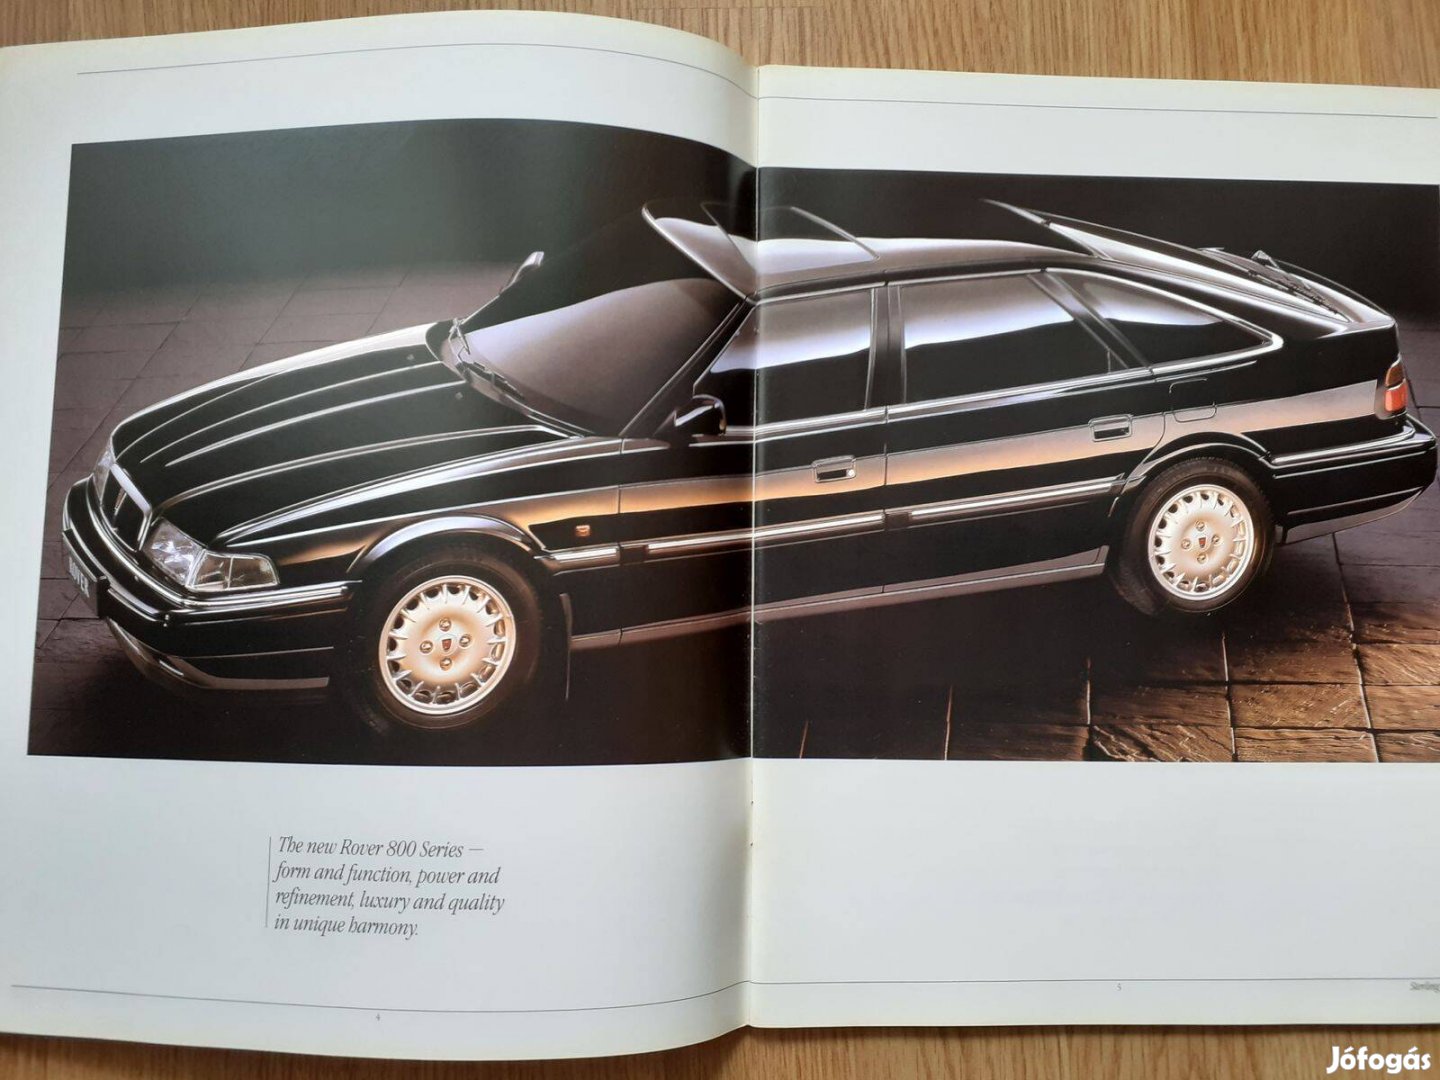 Rover 800 prospektus - 1992, angol nyelvű